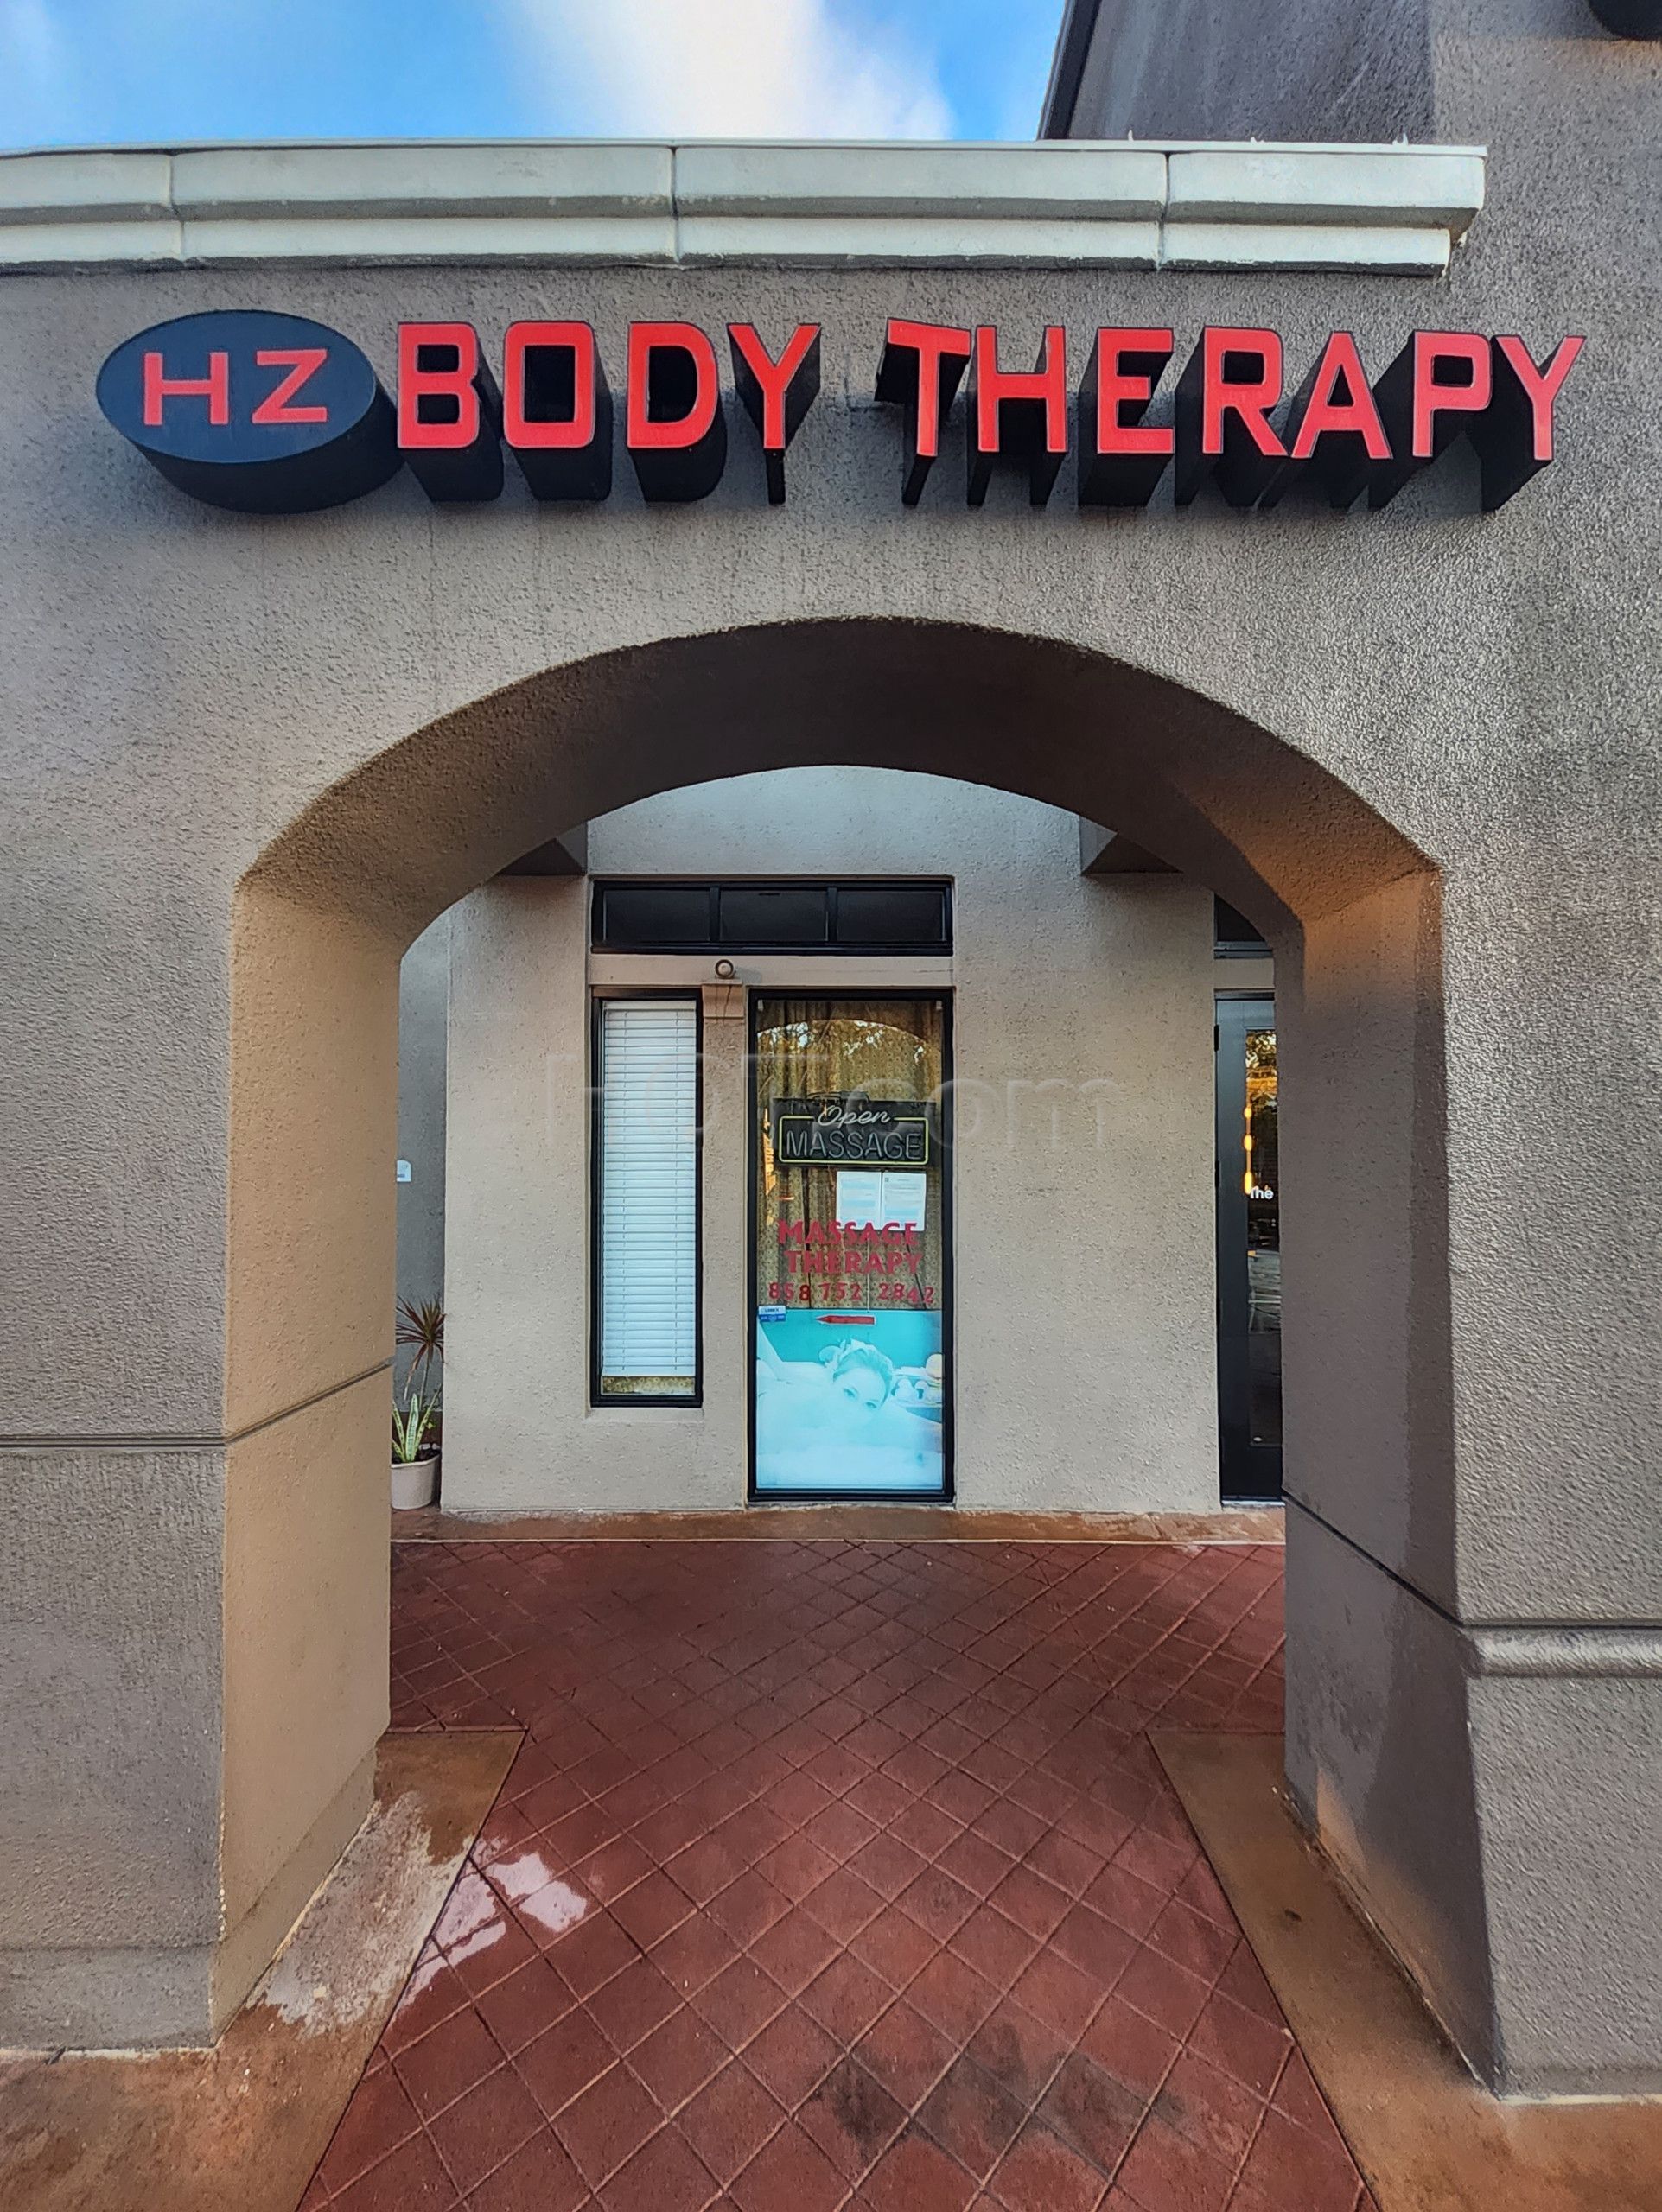 San Diego, California Hz Body Therapy